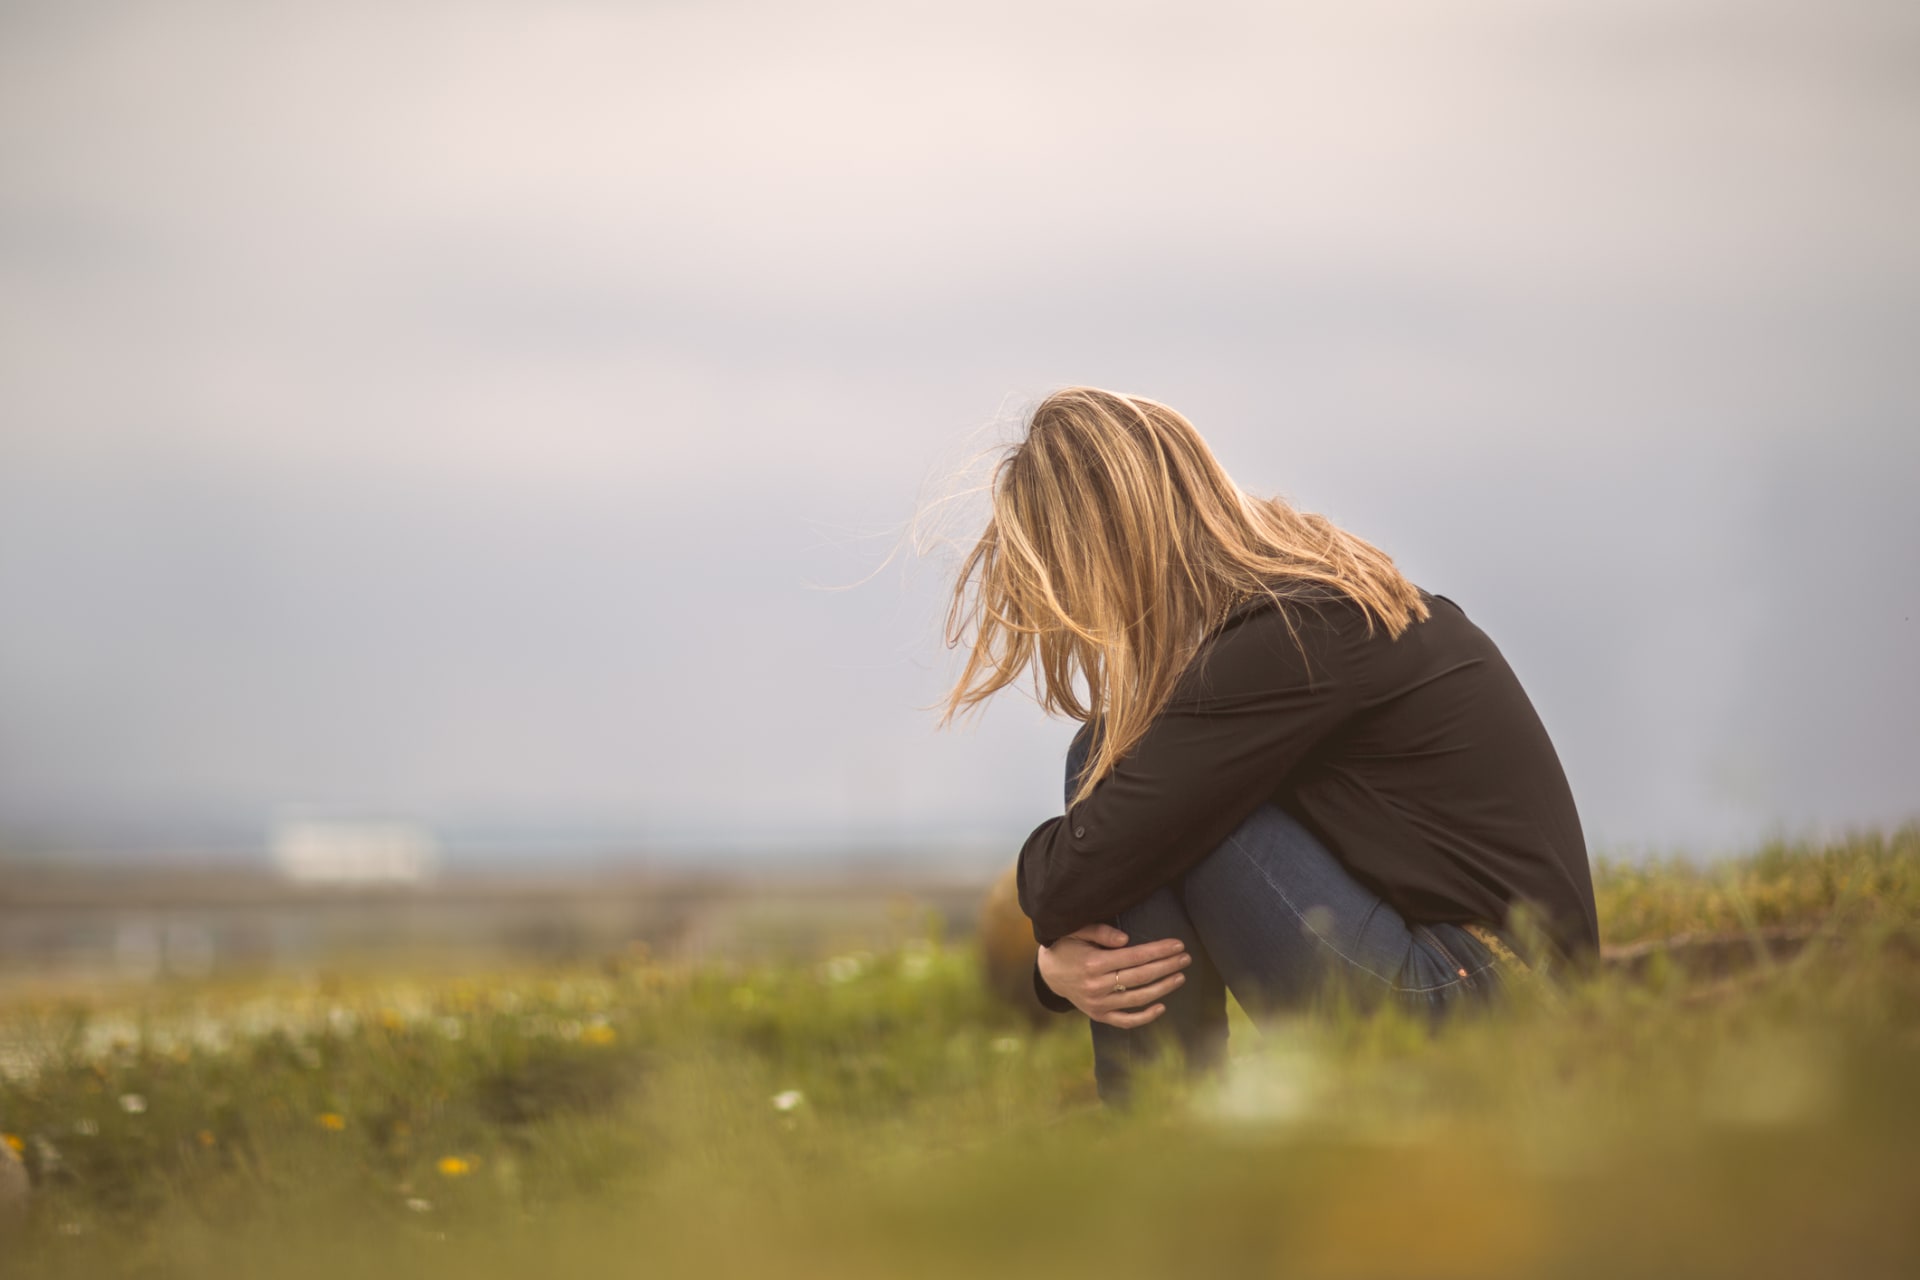 Vyvracíme mýty o zdraví: Deprese není blbá nálada